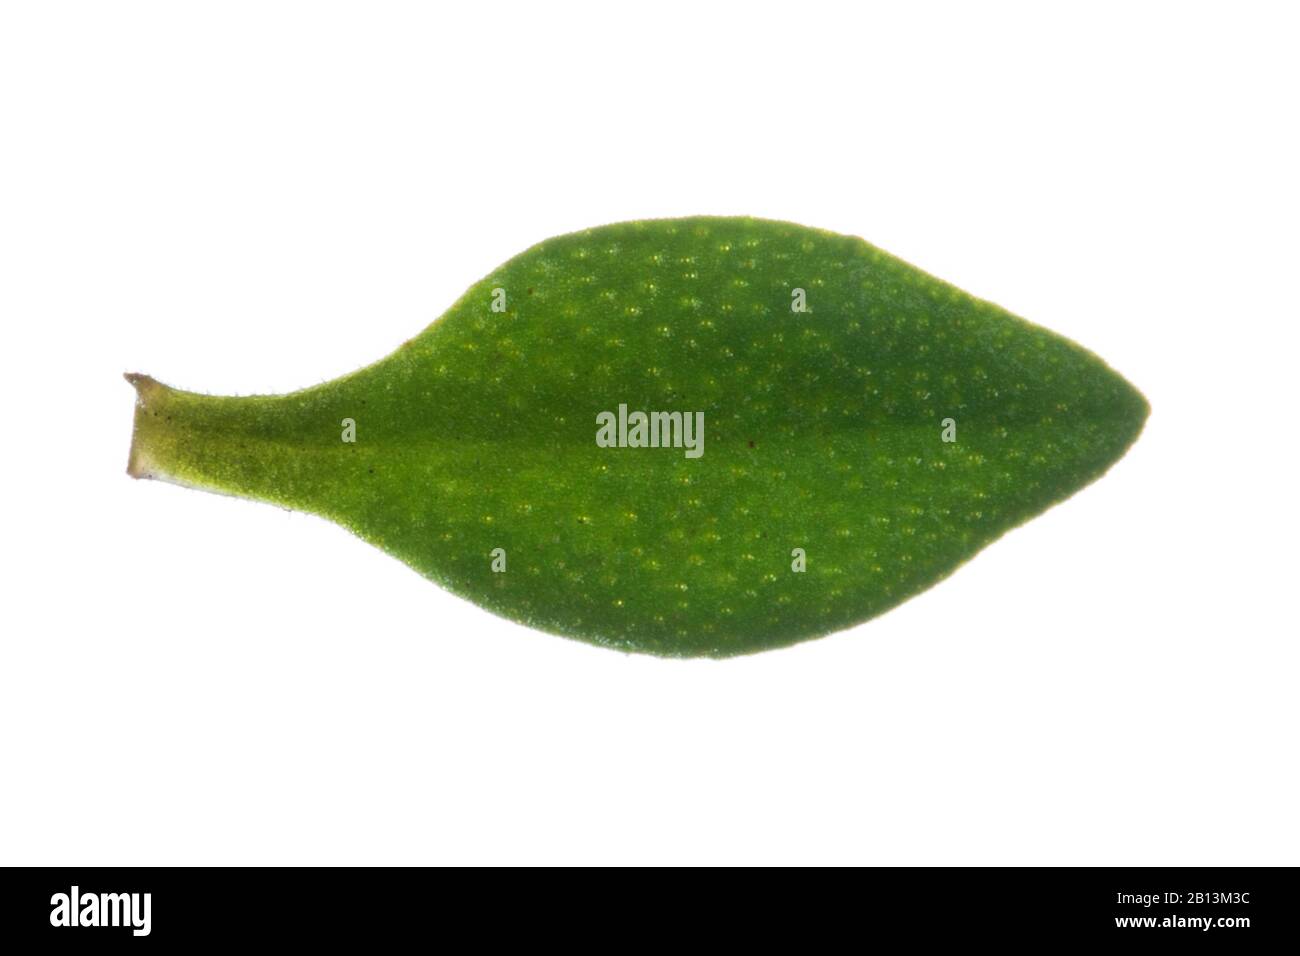 Garden thyme, English thyme, Common thyme (Thymus vulgaris), leaf, cutout Stock Photo